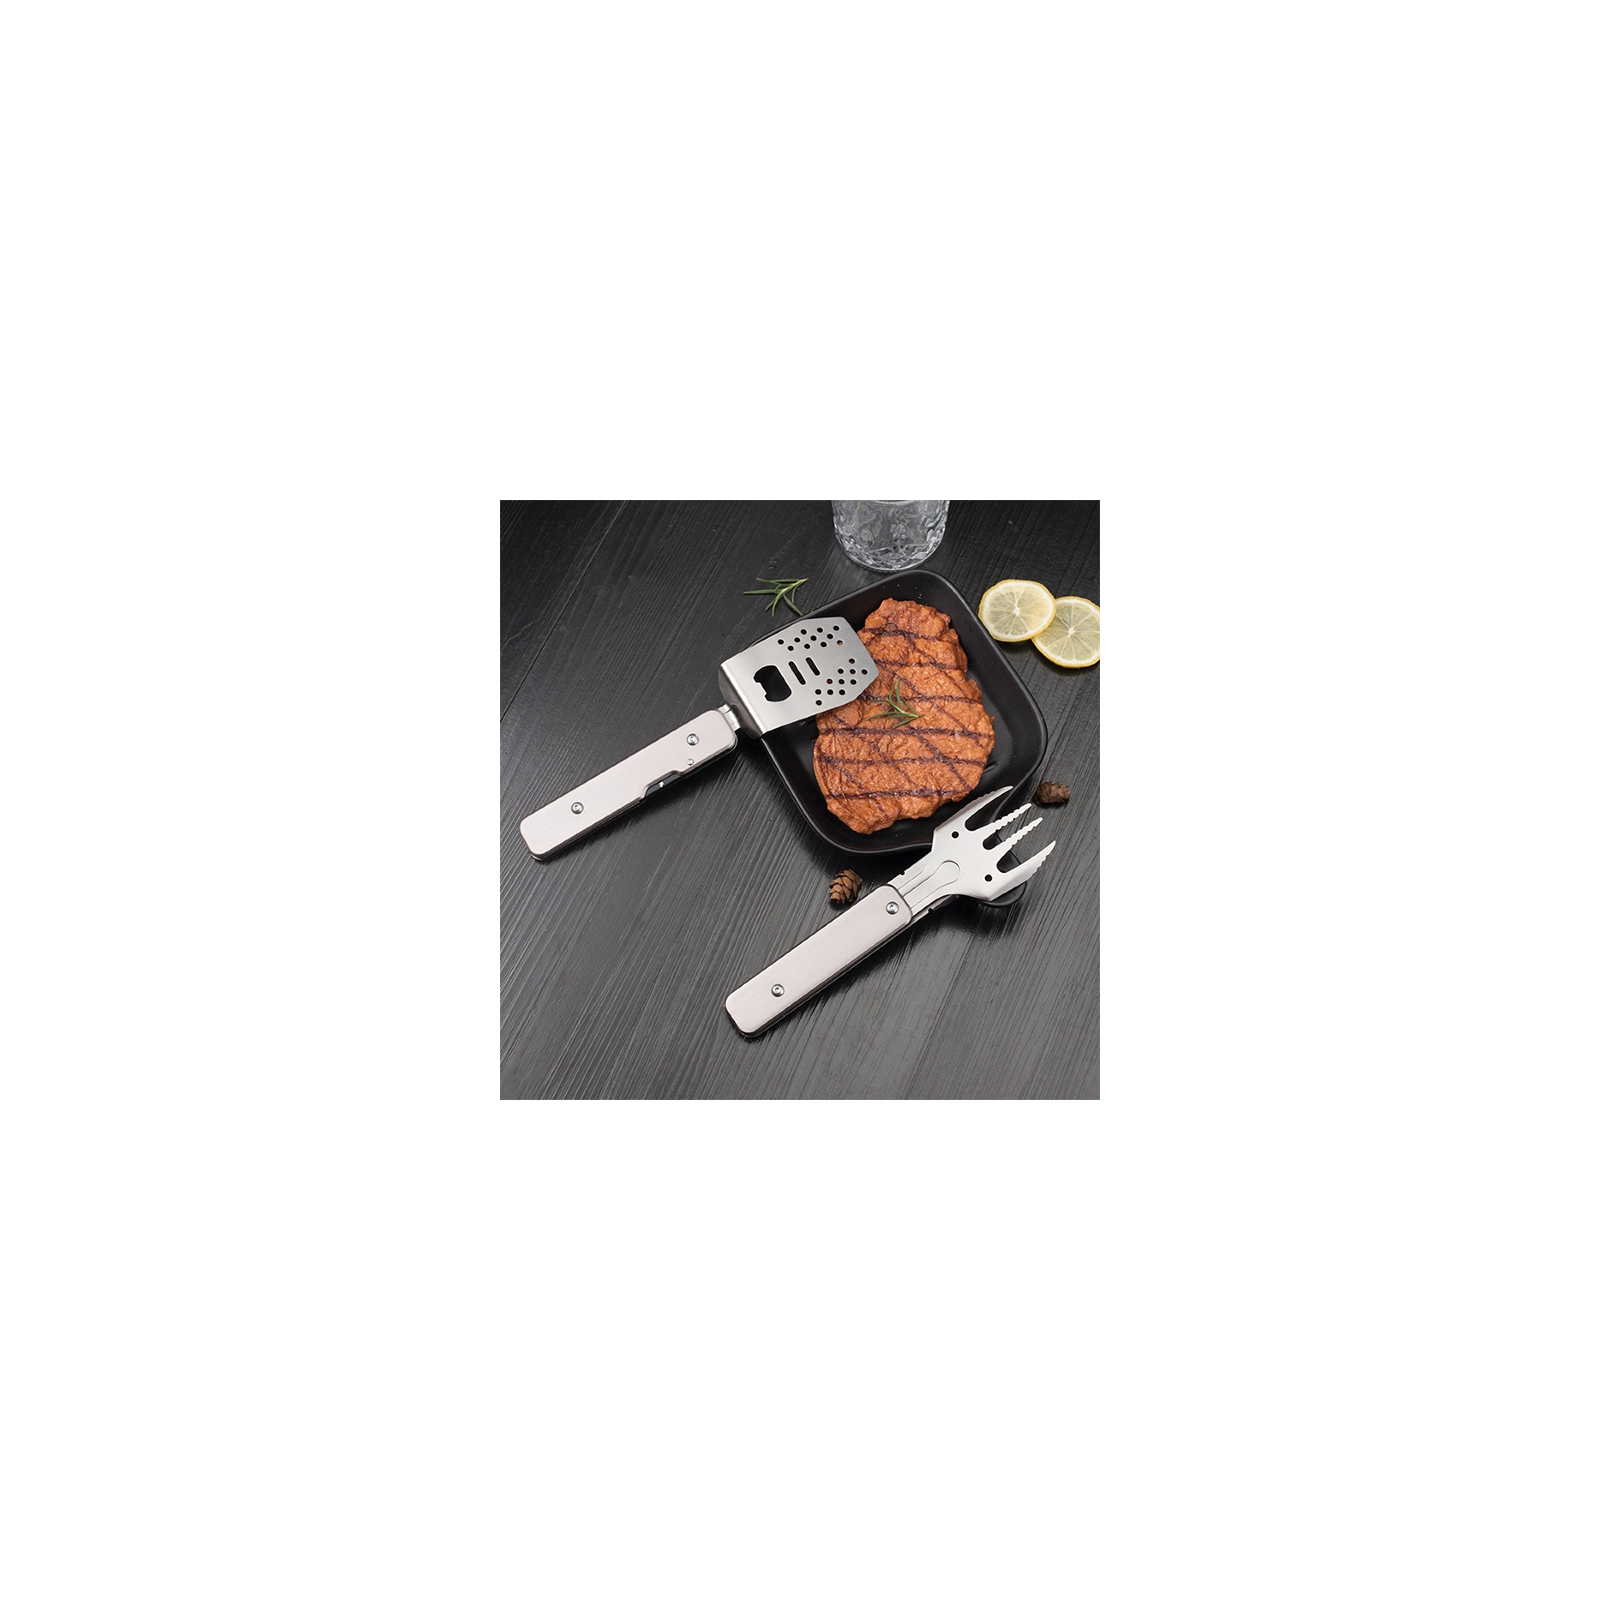 Мультитул Roxon мини набор для барбекю Grey (S602G) зображення 3